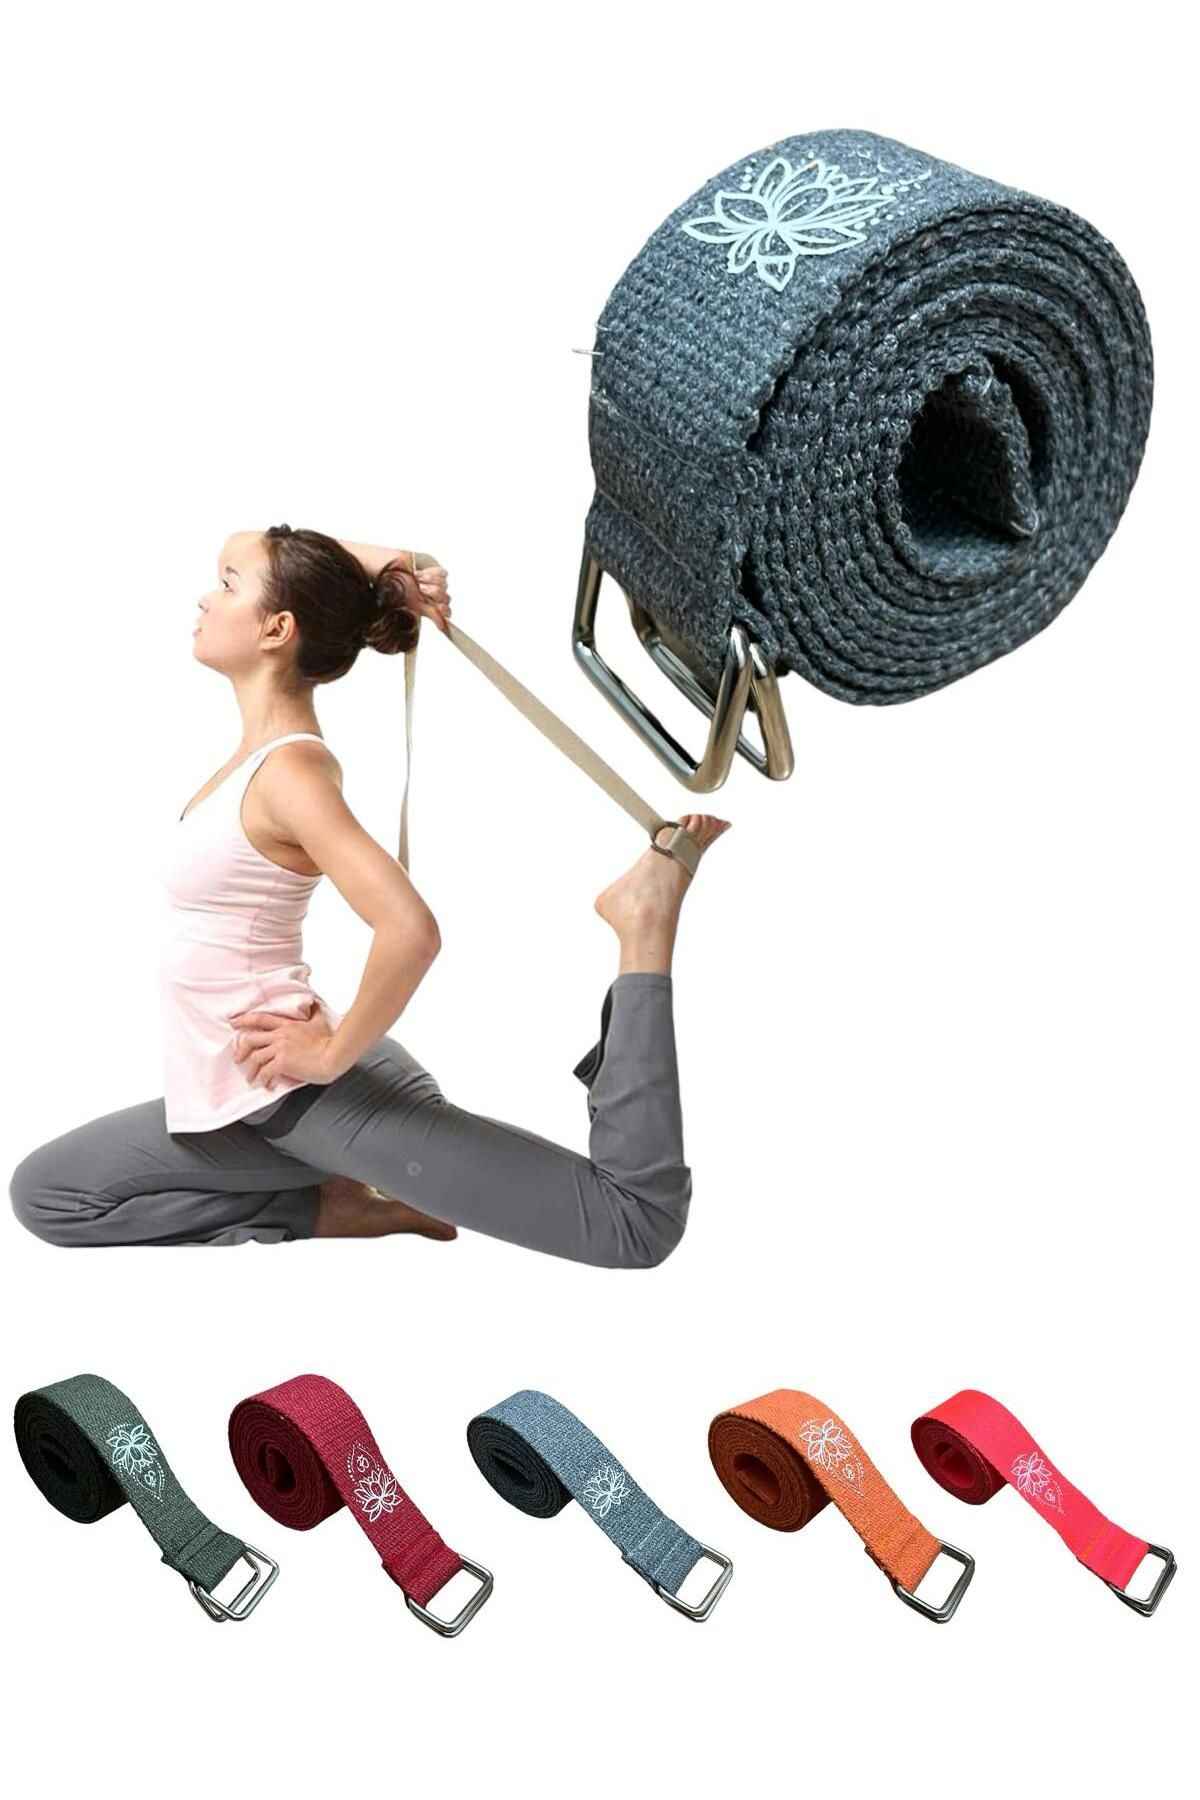 REMEGE Yoga Kemeri  - Yoga Germe Kayışı - Lotus Baskılı Yoga Kemeri 180 Cm Çift Halkalı